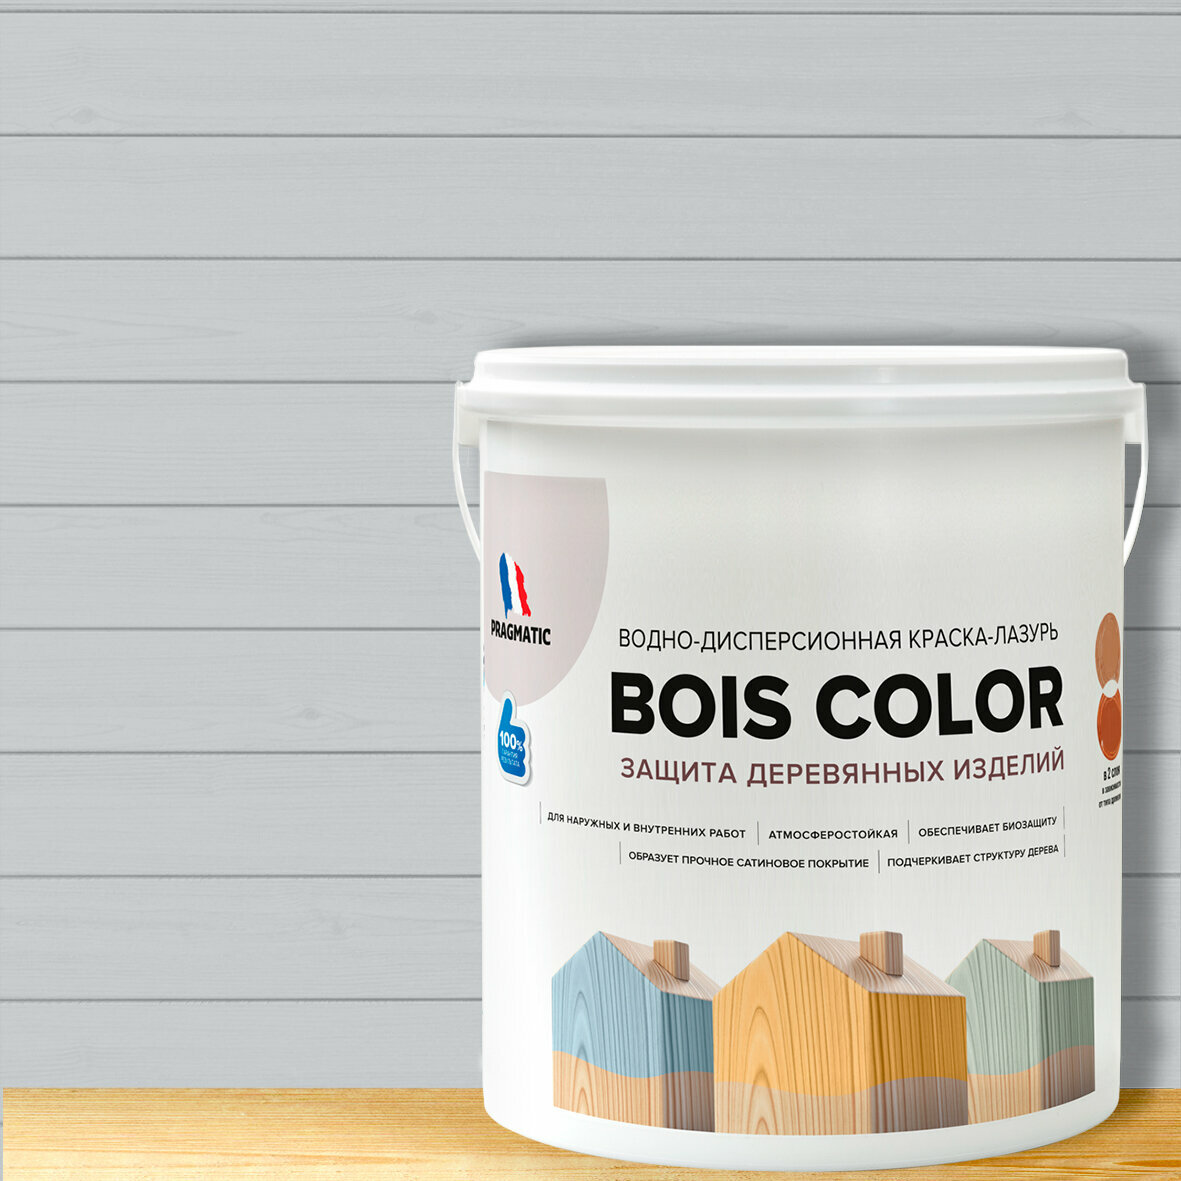 Краска (лазурь) для деревянных поверхностей и фасадов, обеспечивает биозащиту, защищает от плесени, грибков, атмосферостойкая, водоотталкивающая BOIS COLOR 0,9 л цвет Серый металлик 8258